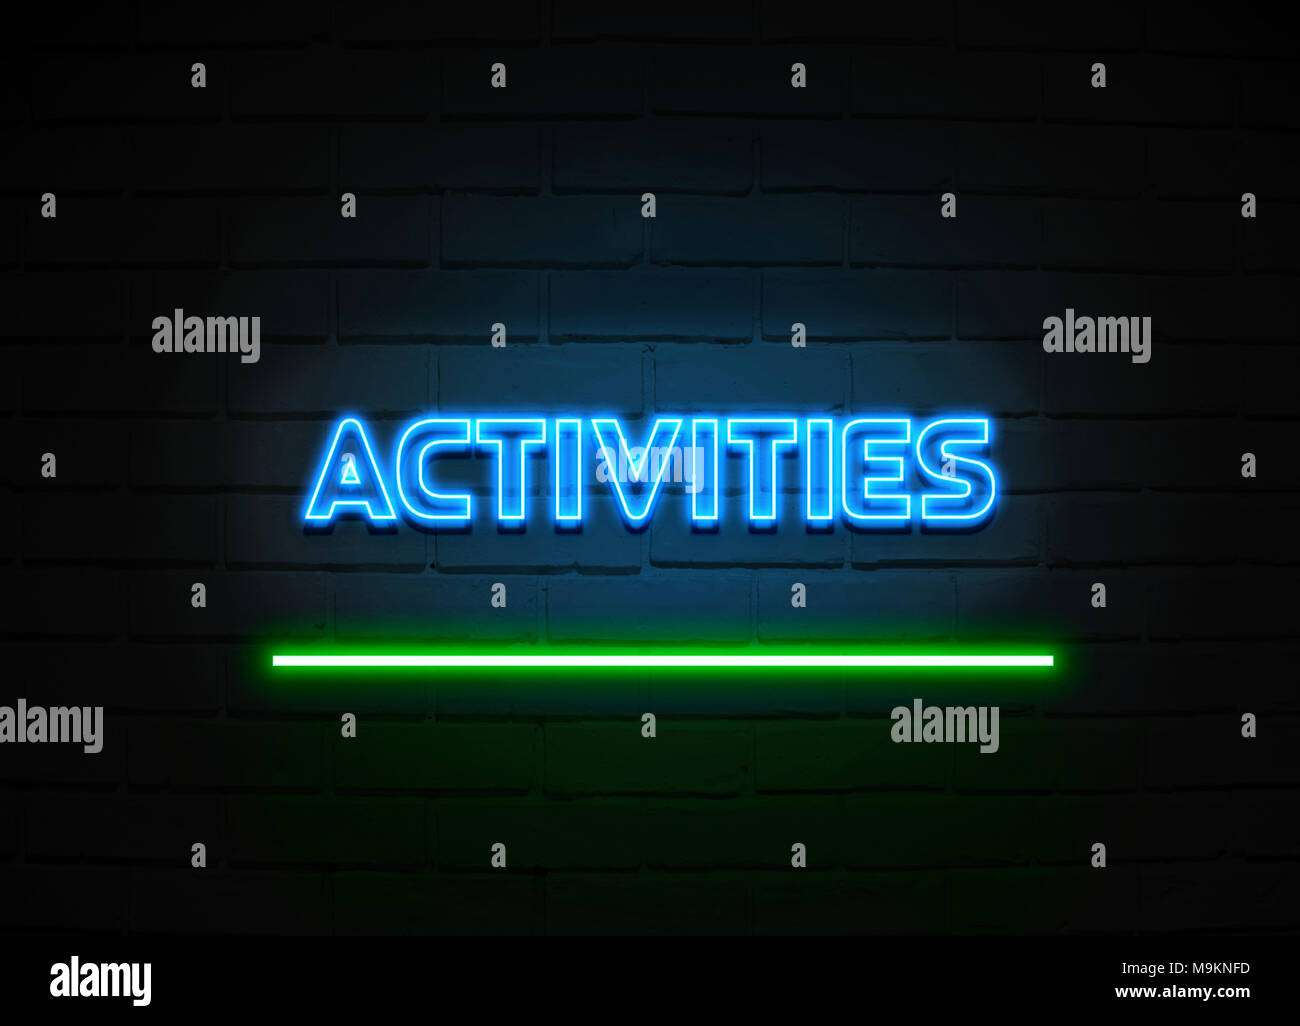 Aktivitäten Leuchtreklame - glühende Leuchtreklame auf brickwall Wand - 3D-Royalty Free Stock Illustration dargestellt. Stockfoto